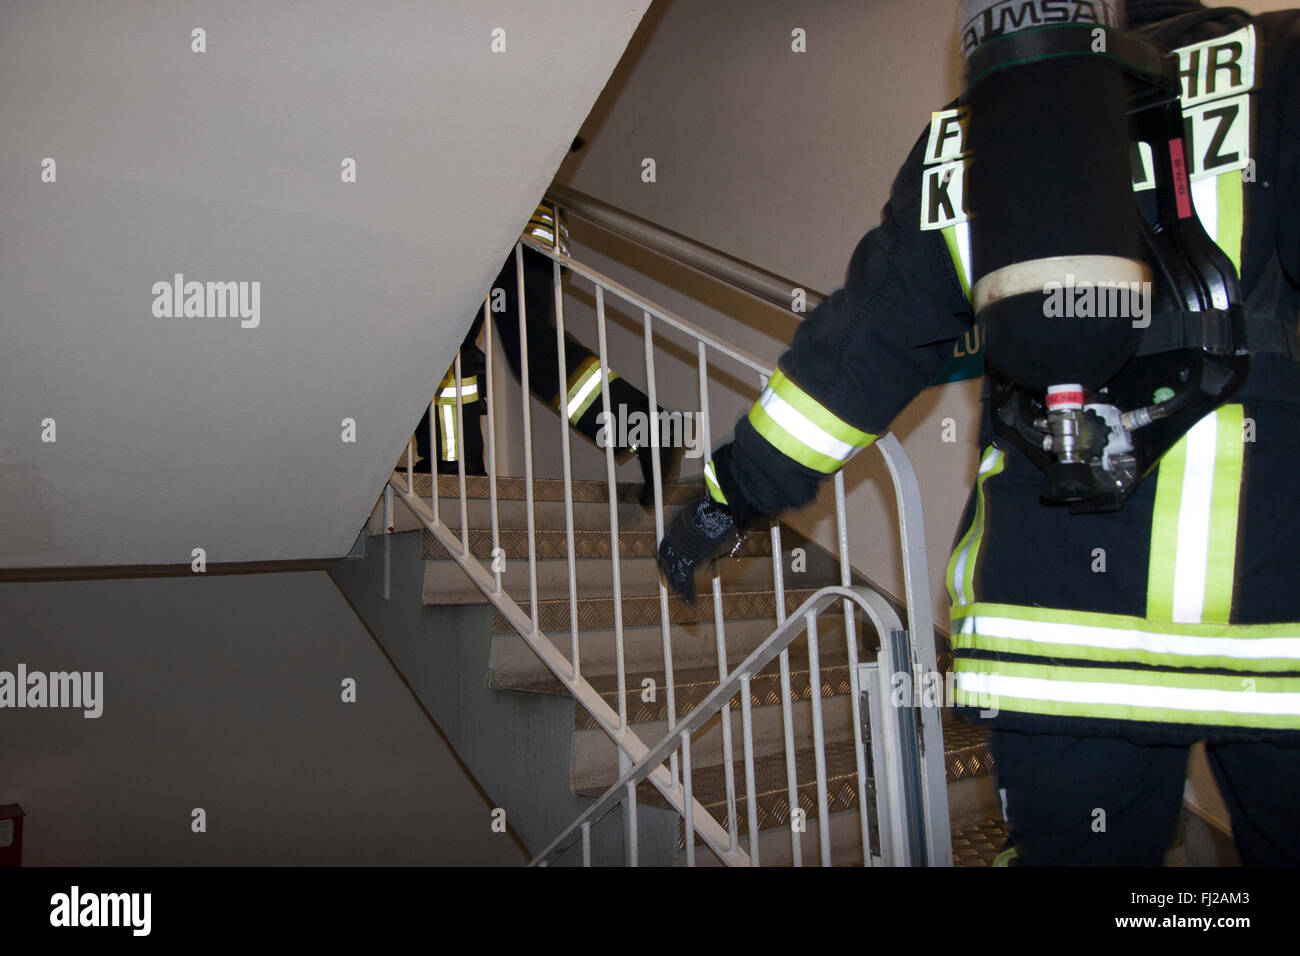 Stairrun pompier de Berlin. Berlin, Allemagne. Deux personne des équipes provenant de diverses villes et pays exécuter en hausse de 39 étages (770 marches) dans un équipement de protection complet. Banque D'Images